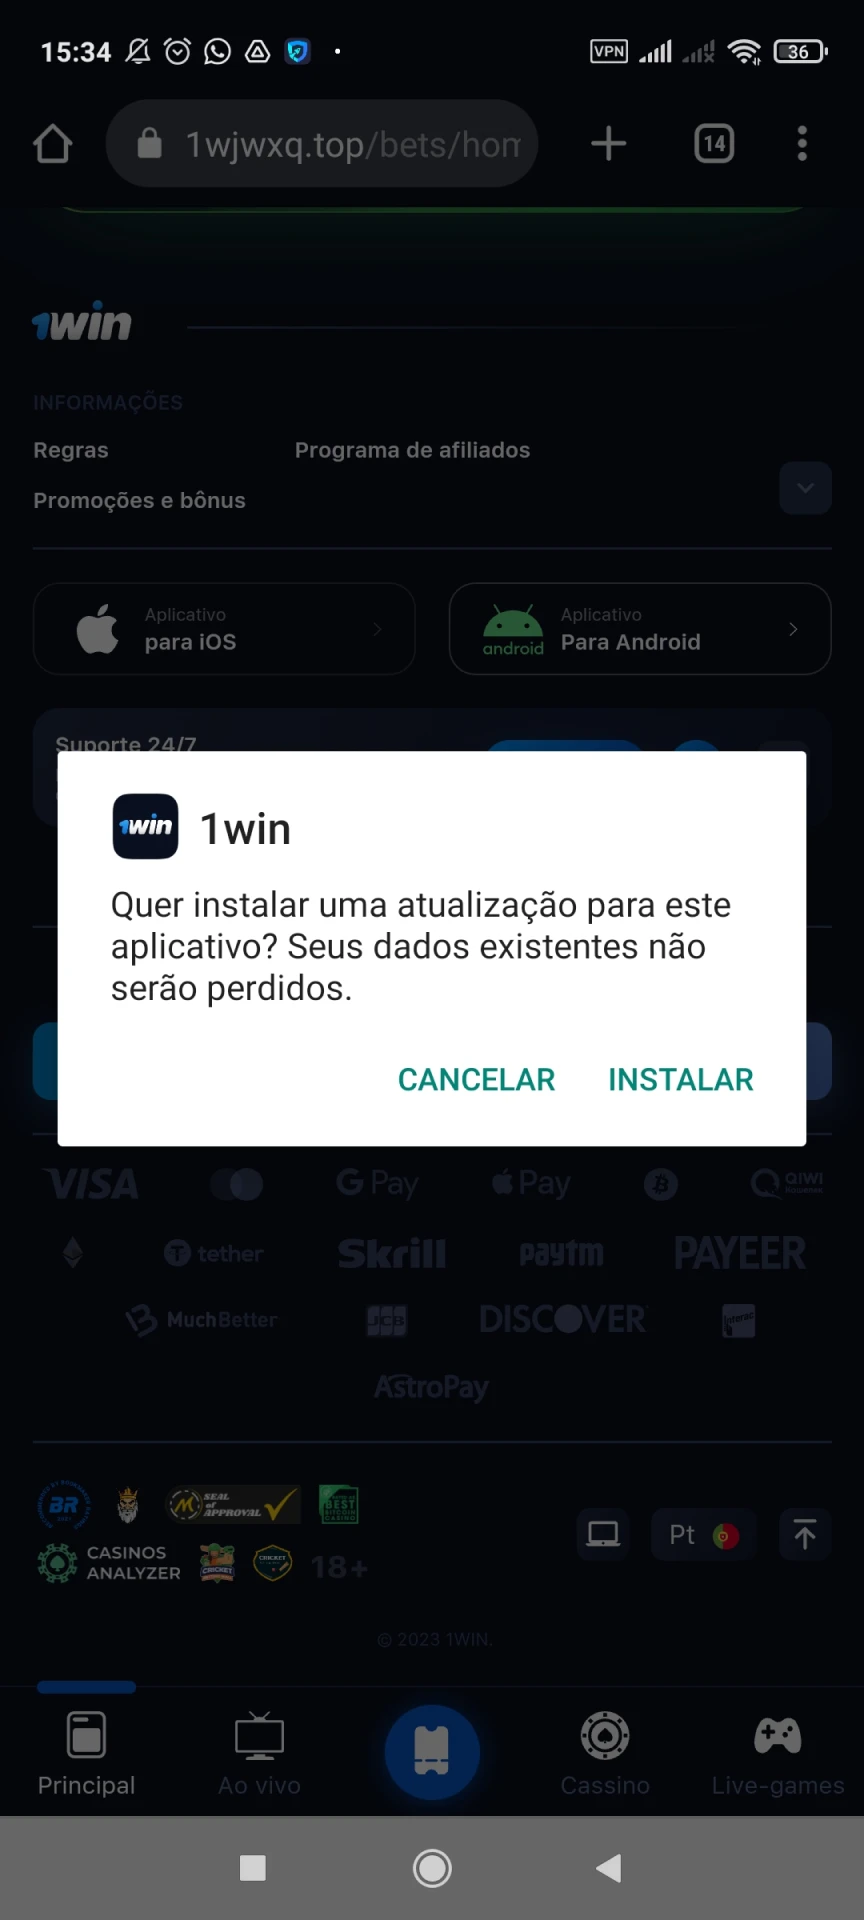 Comece a instalar o aplicativo 1win para Android.